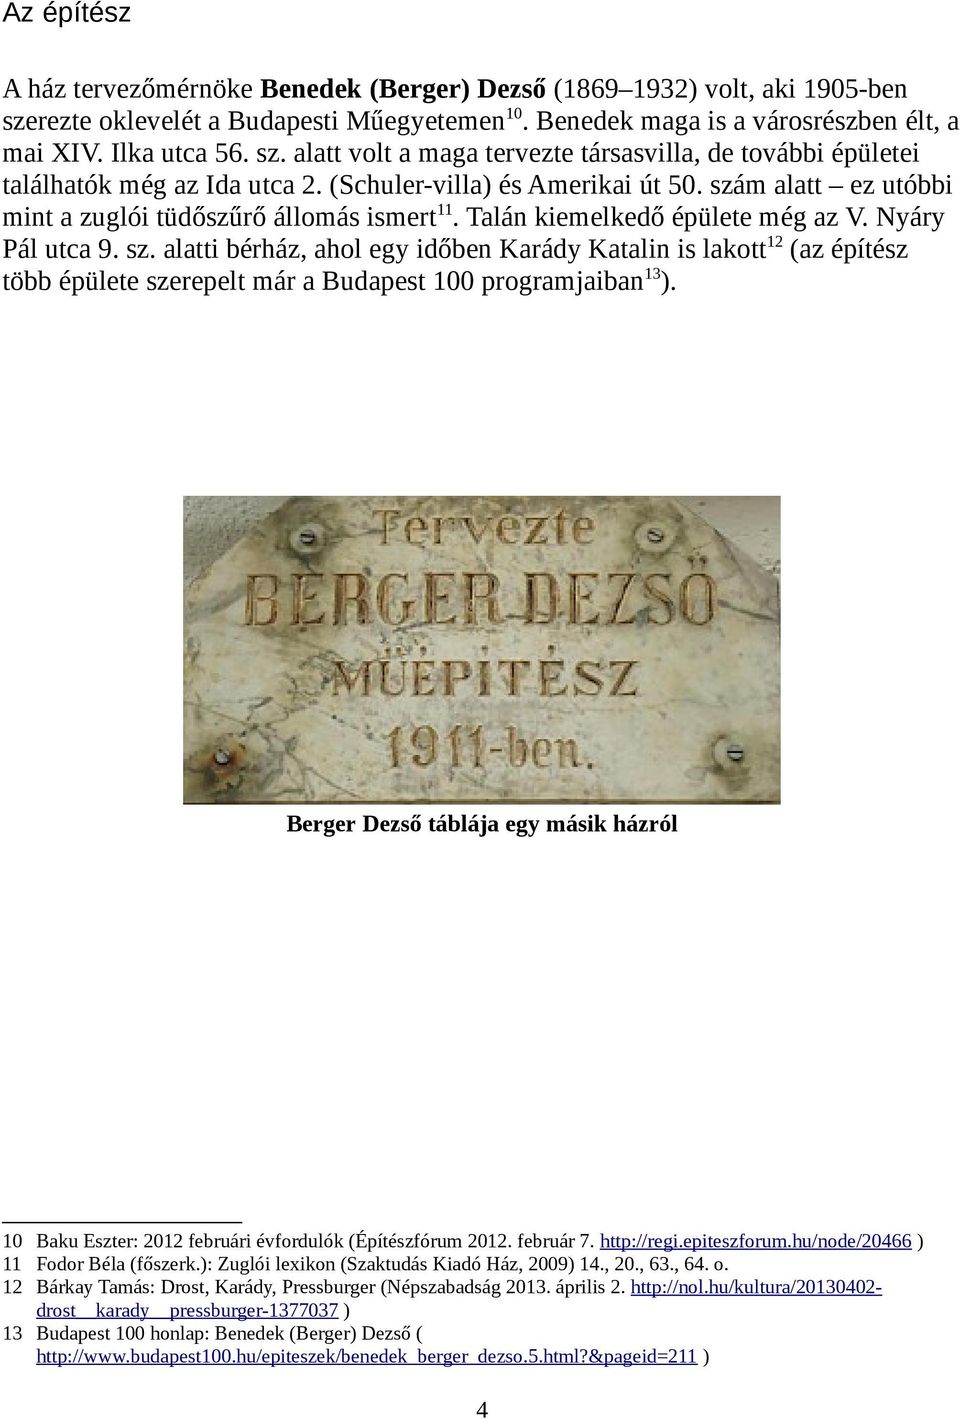 Berger Dezső táblája egy másik házról 10 Baku Eszter: 2012 februári évfordulók (Építészfórum 2012. február 7. http://regi.epiteszforum.hu/node/20466 ) 11 Fodor Béla (főszerk.